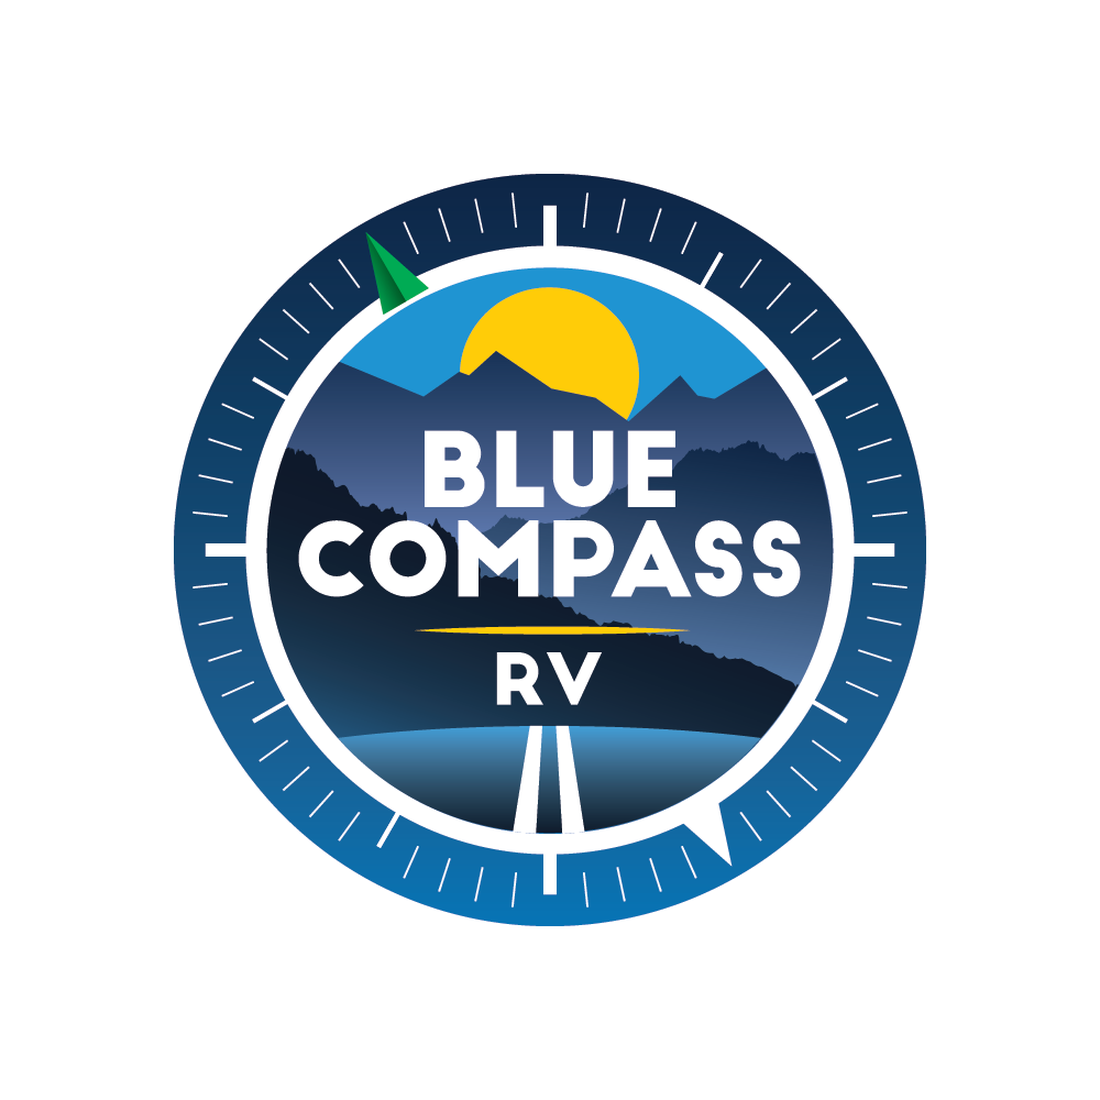 Blue Compass RV Kansas City - Grain Valley, MO 64029 - (816)847-1699 | ShowMeLocal.com